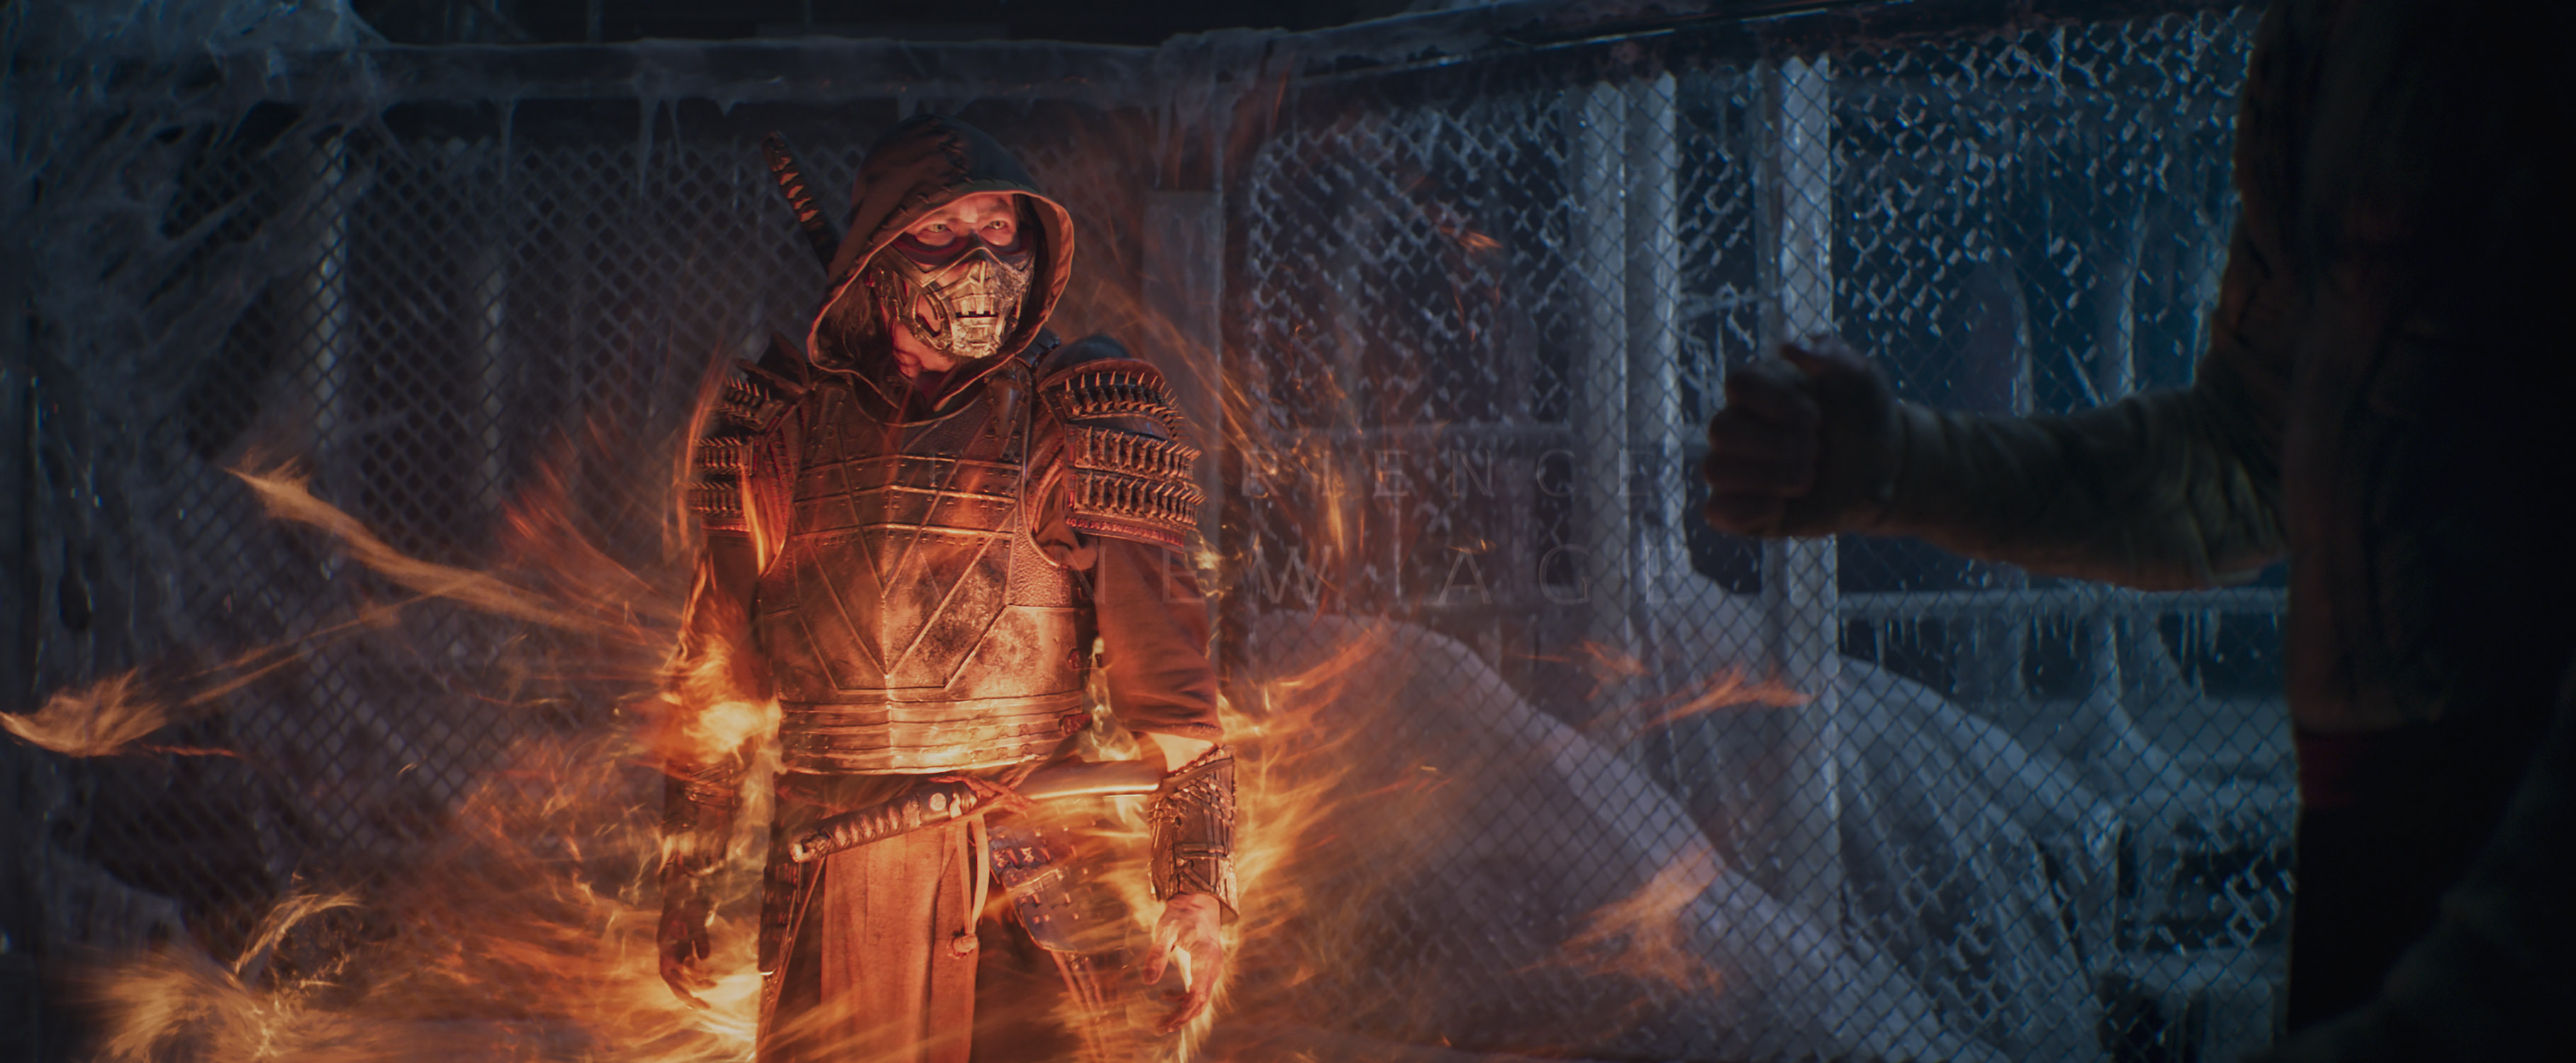 "Mortal Kombat" - pierwszy zwiastun ocieka krwią i nawiązaniami